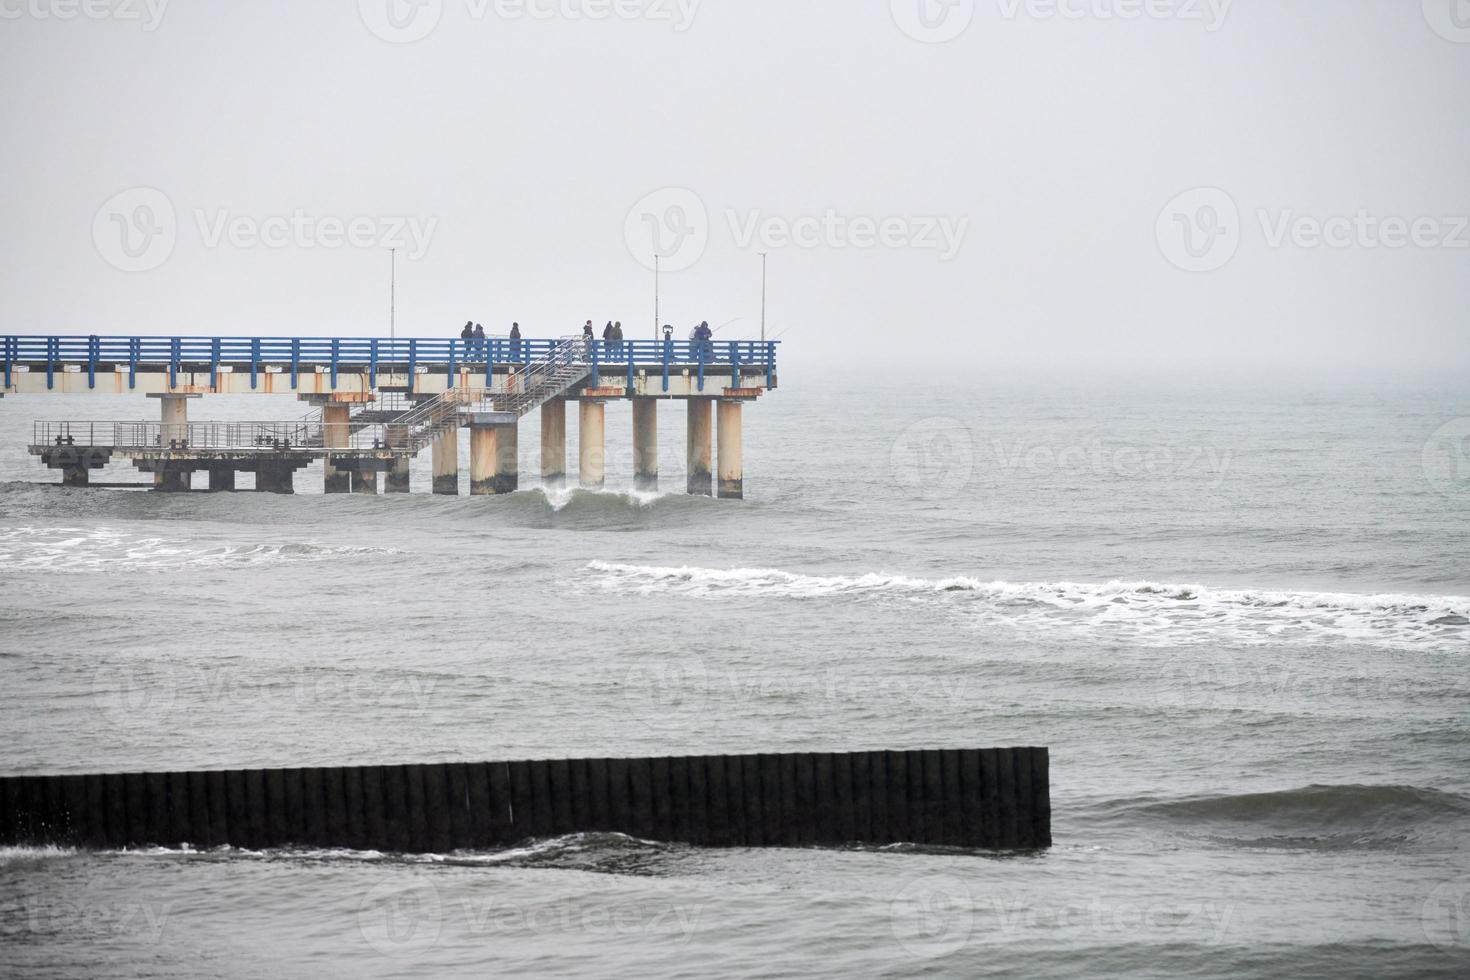 Old long wooden breakwaters in sea waves, winter landscape photo